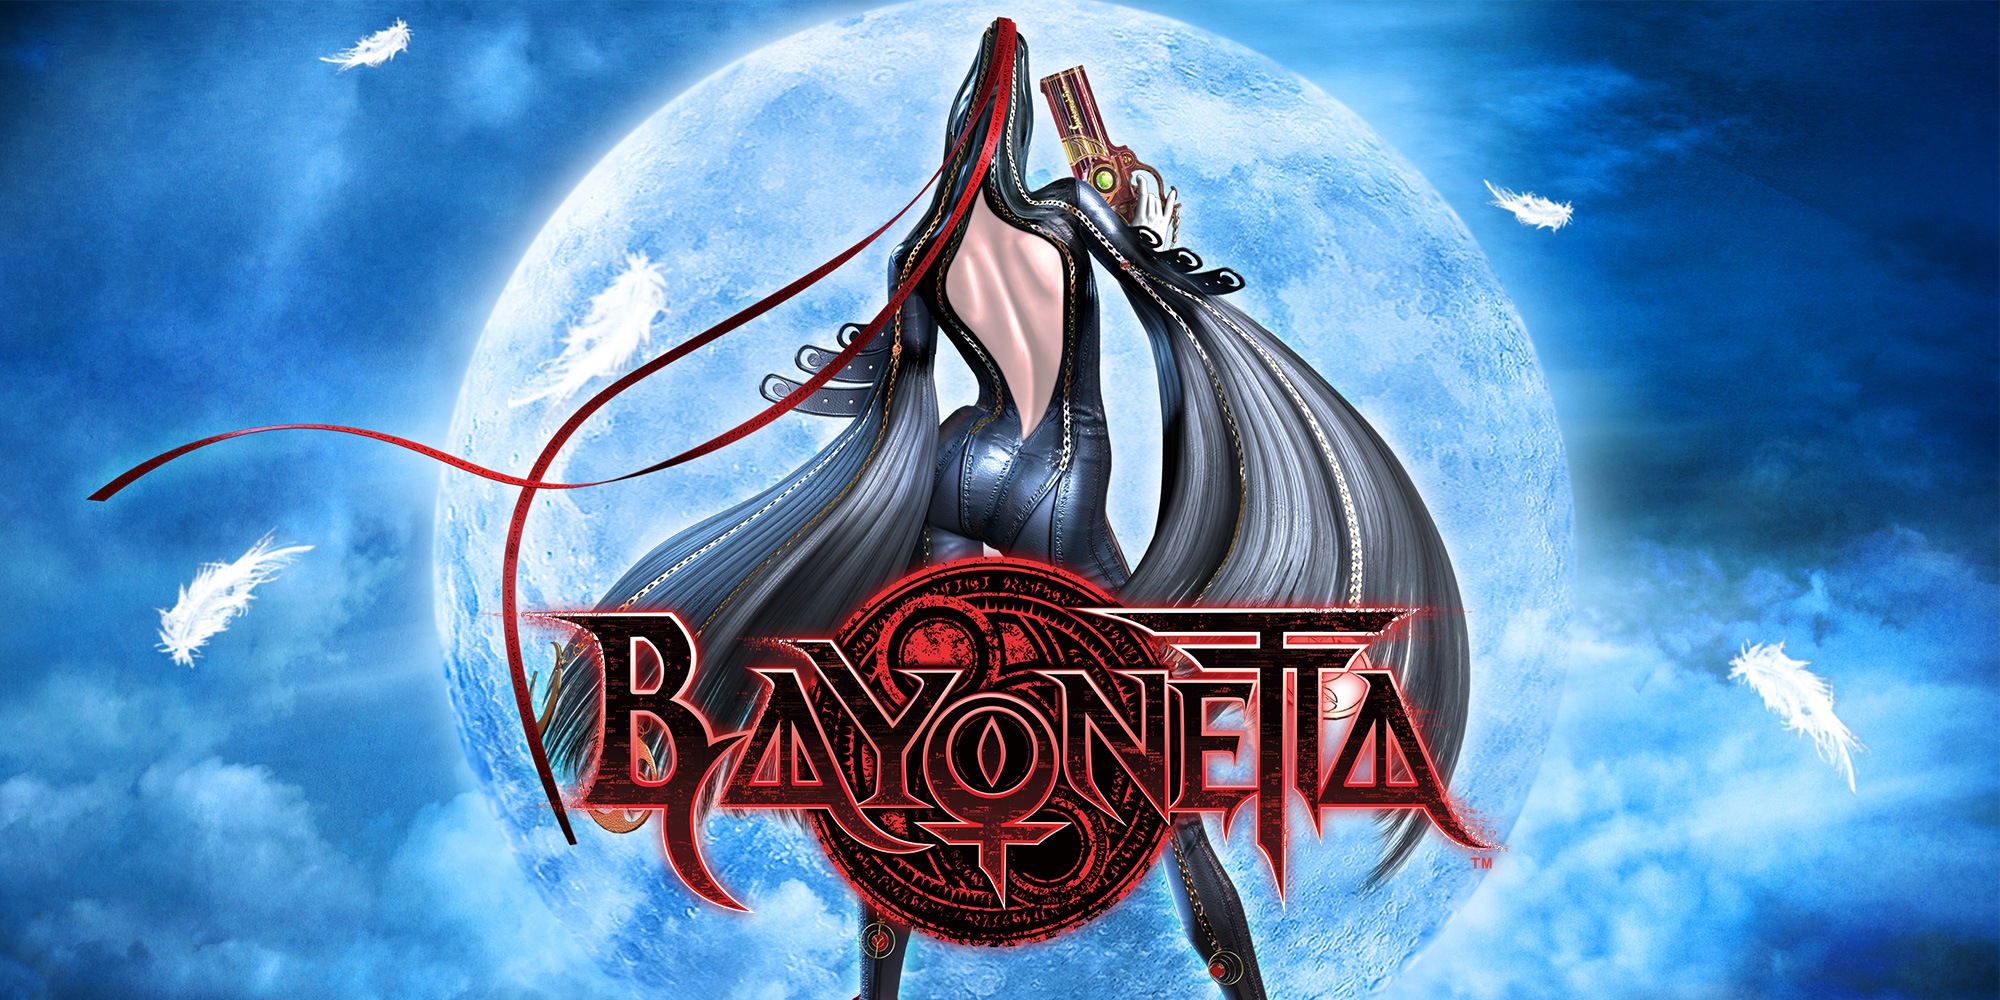  Bayonetta & Vanquish 10th Anniversary Bundle (PS4